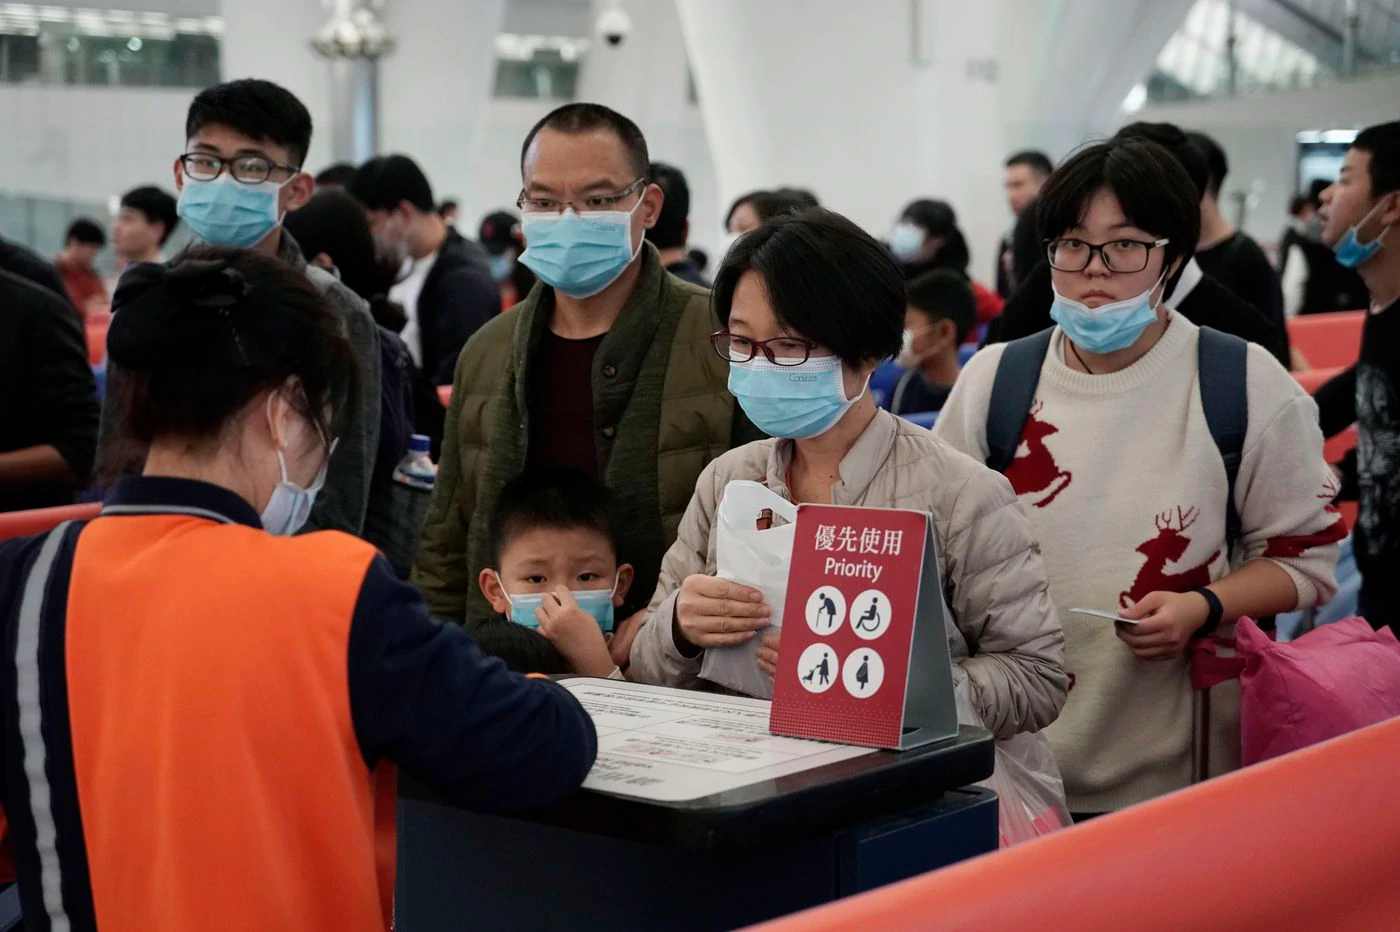 Güney Kore koronavirüse savaş açtı